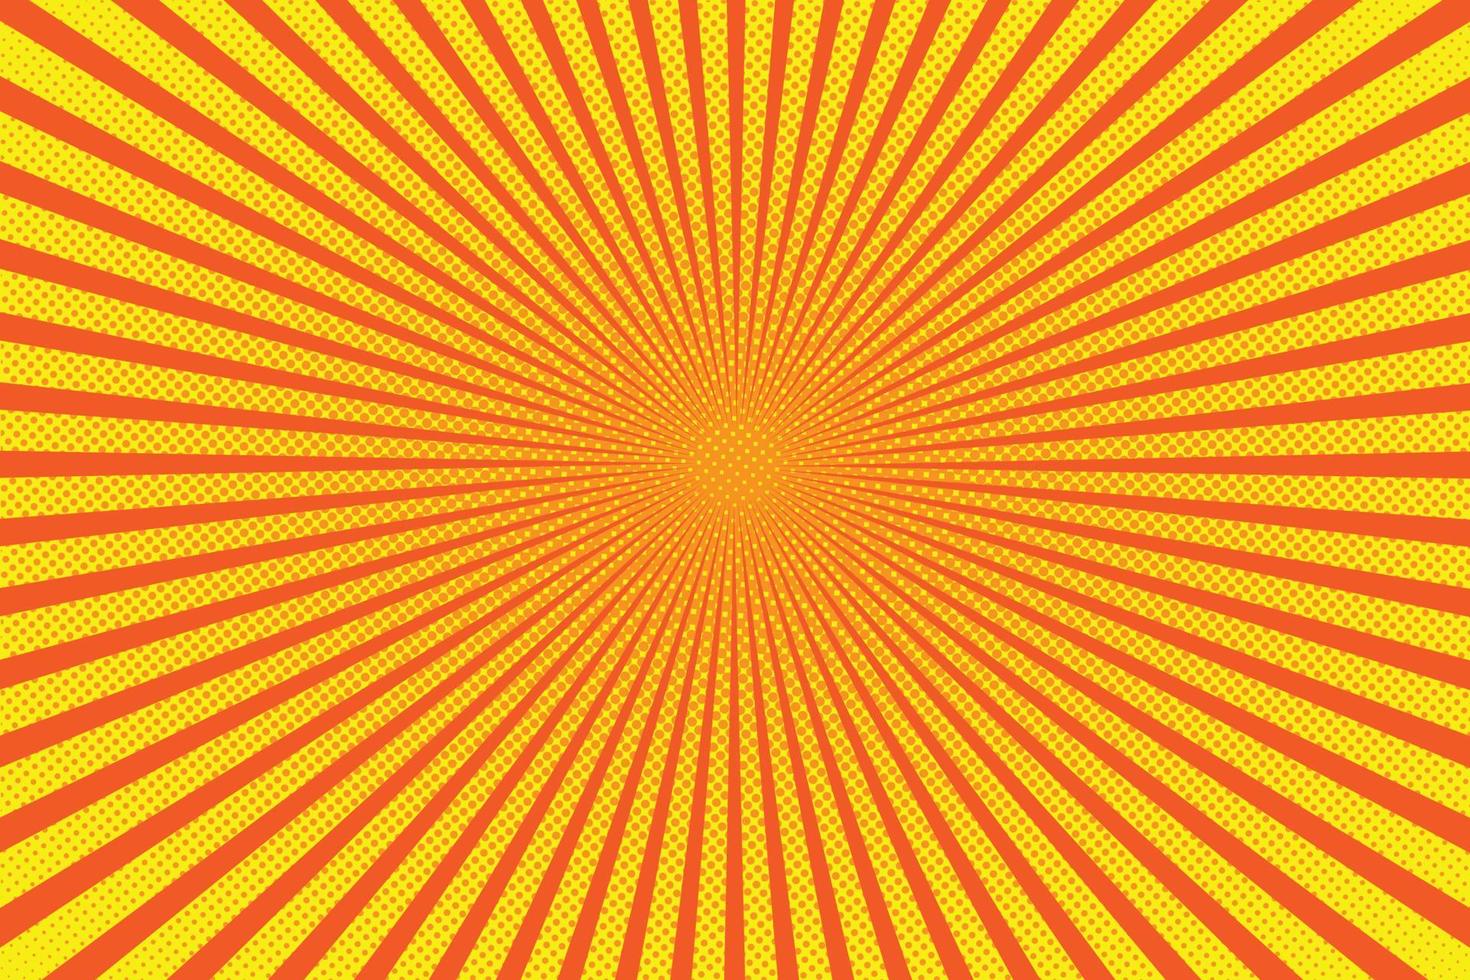 hell Sonne Strahlen mit Gelb Punkte vektor